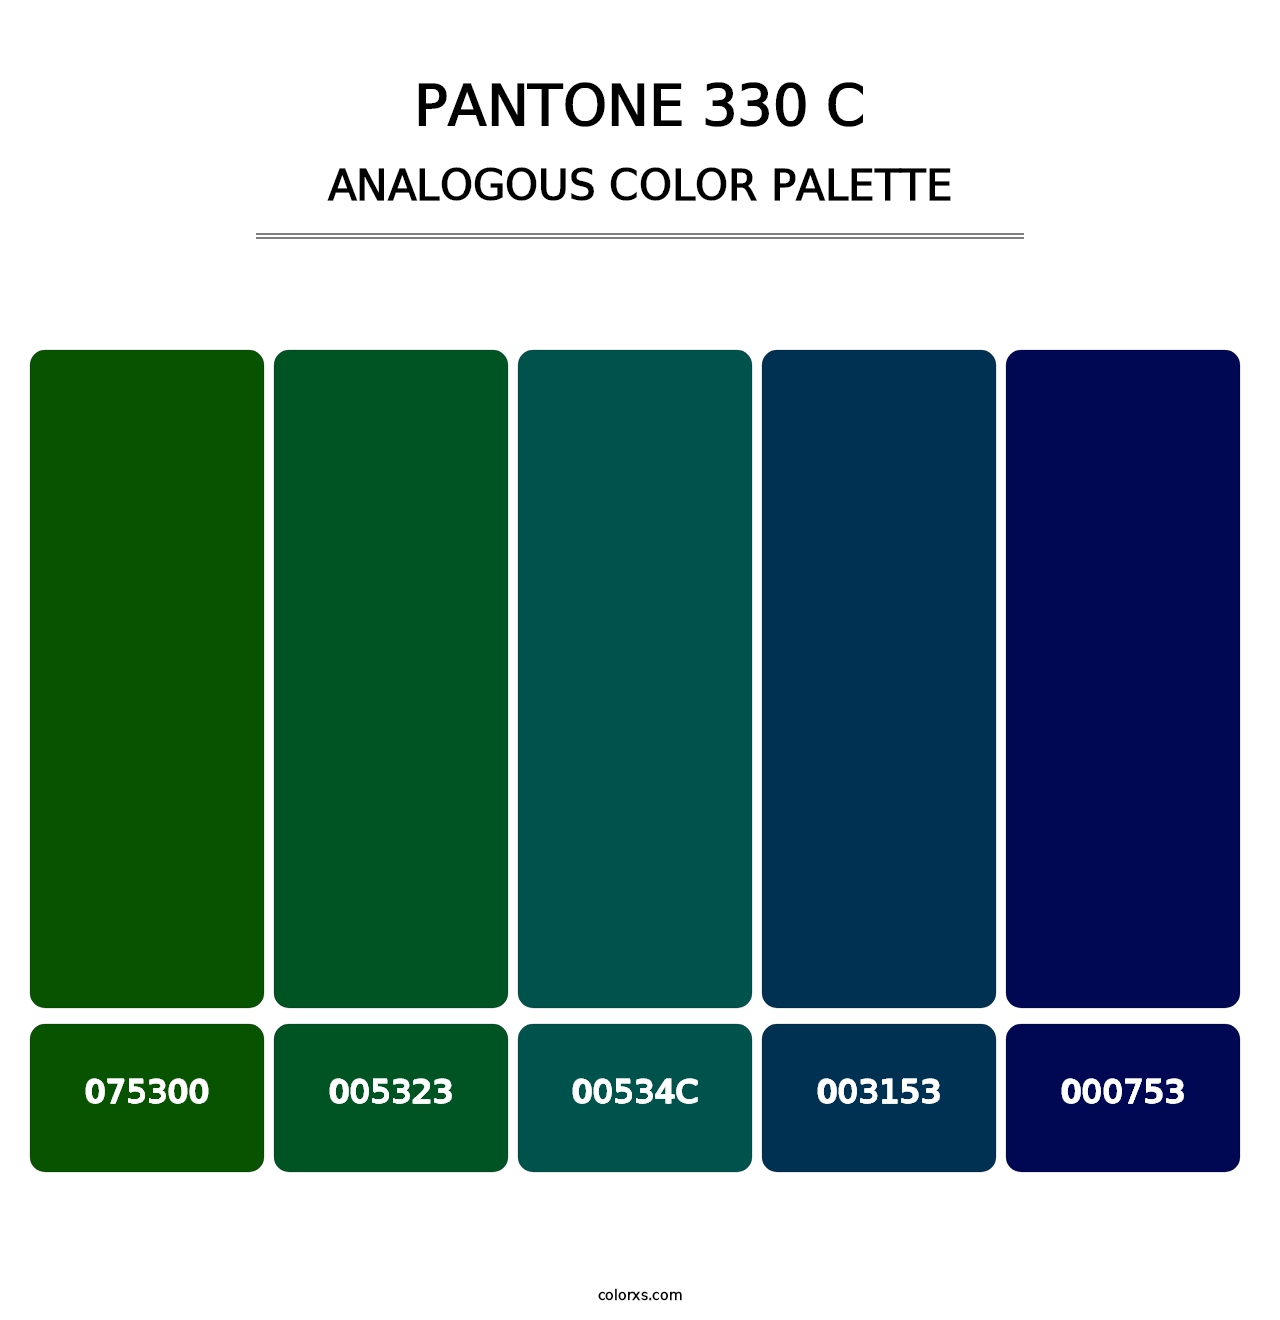 PANTONE 330 C - Analogous Color Palette